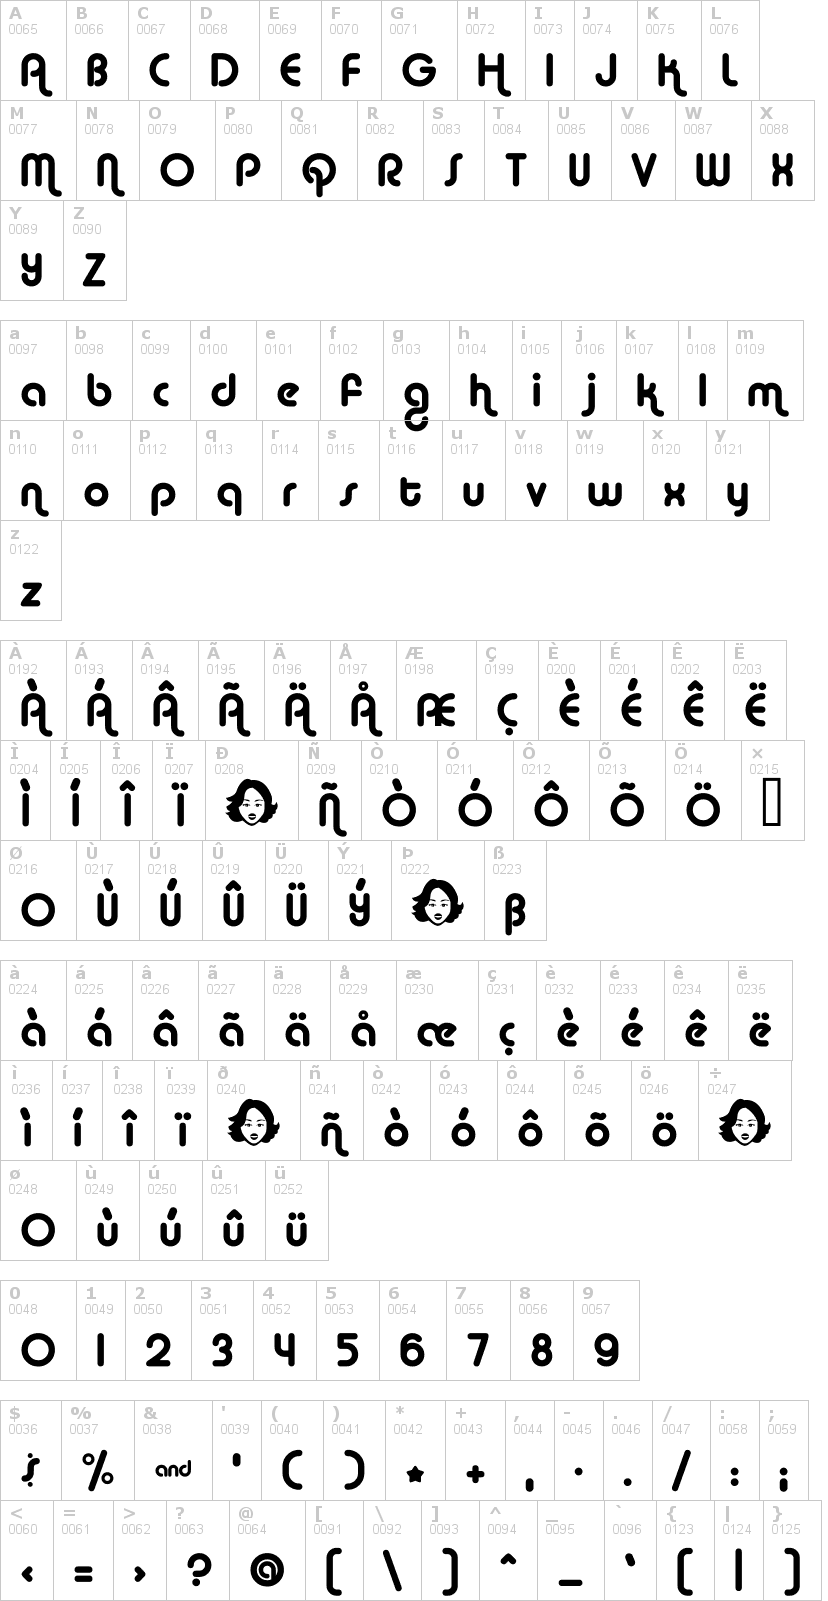 Lettere dell'alfabeto del font alba con le quali è possibile realizzare adesivi prespaziati